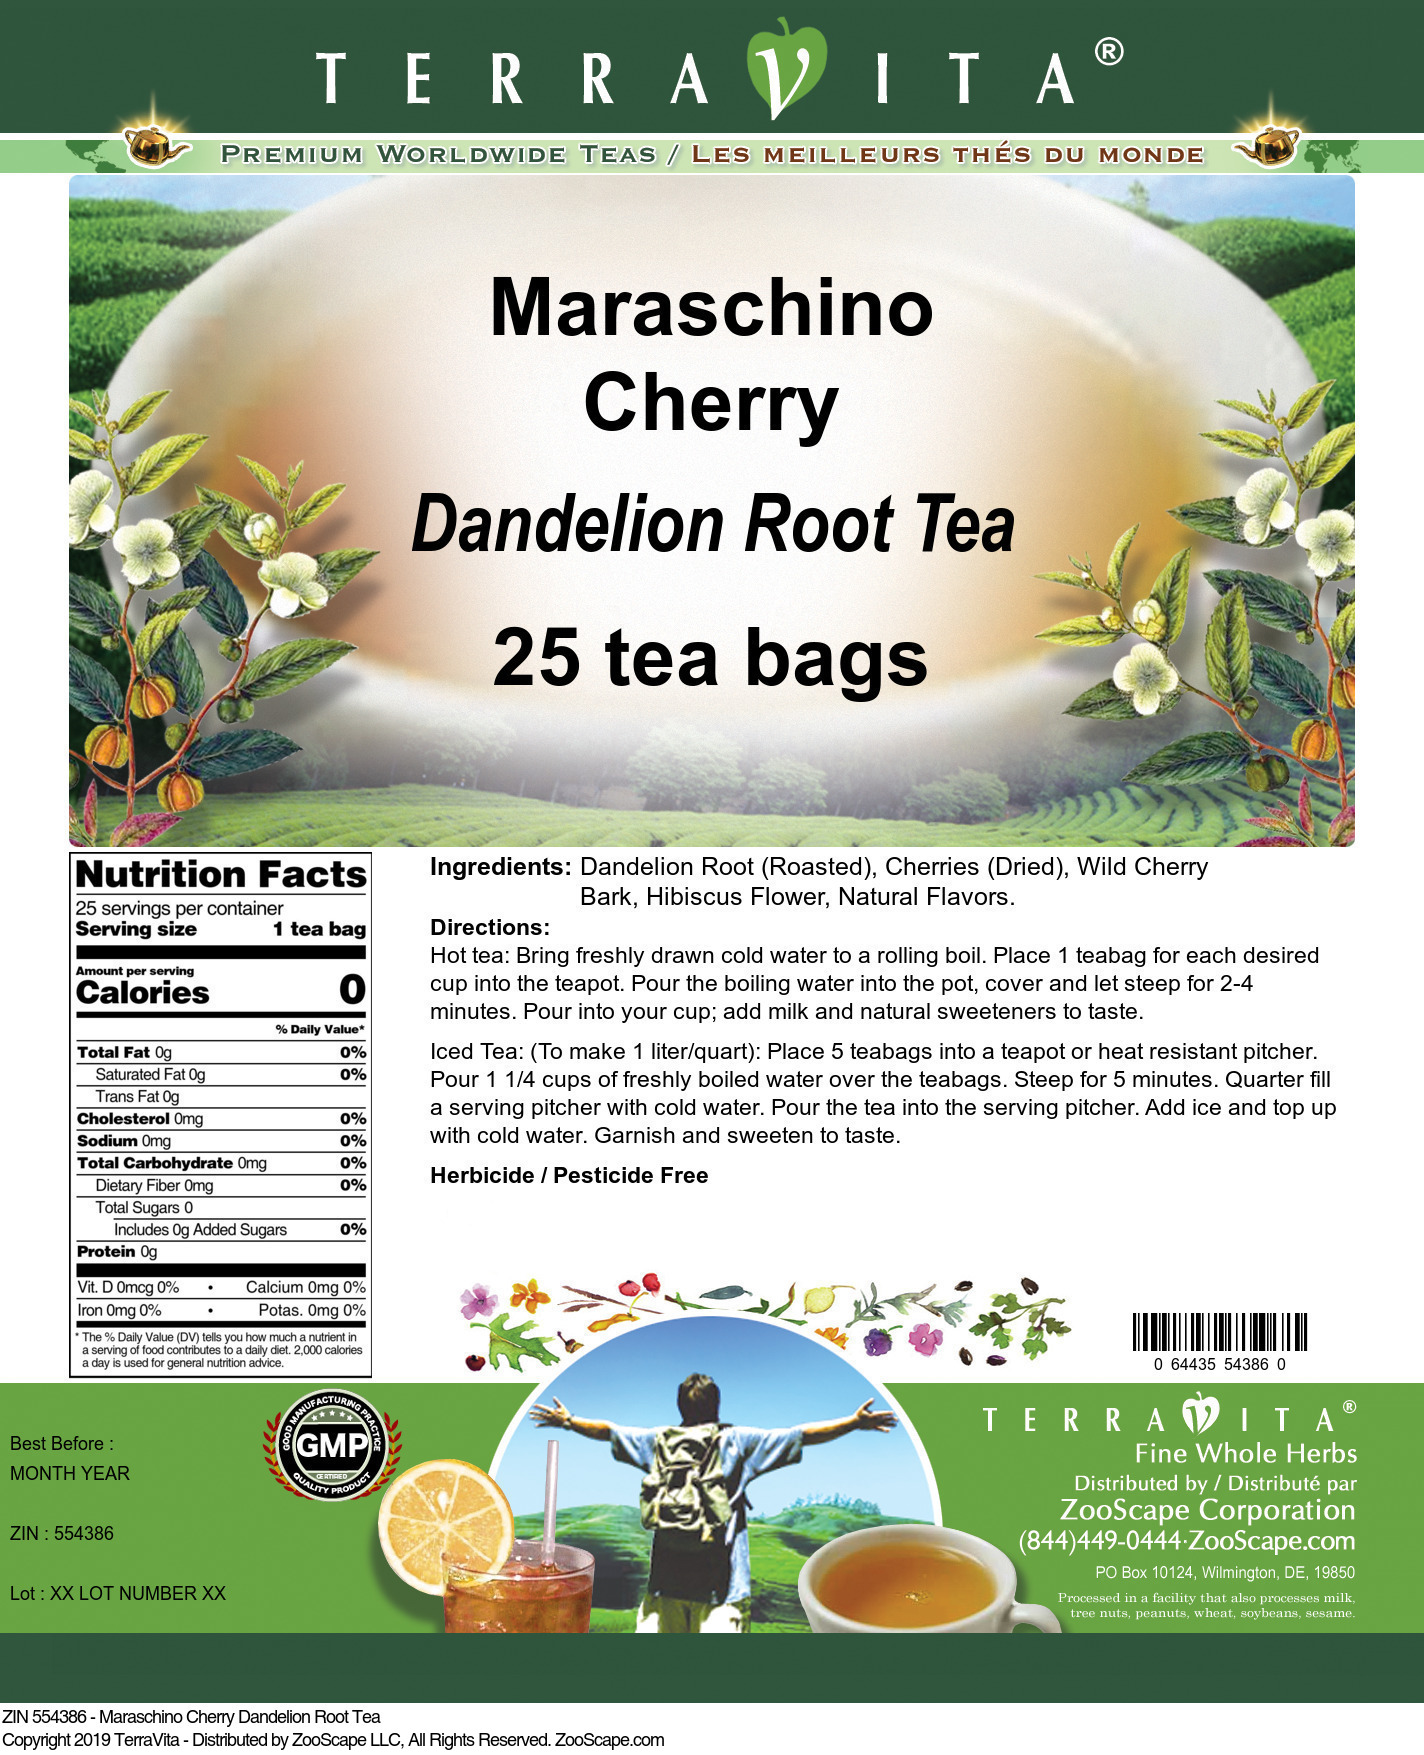 Maraschino Cherry Dandelion Root Tea - Label